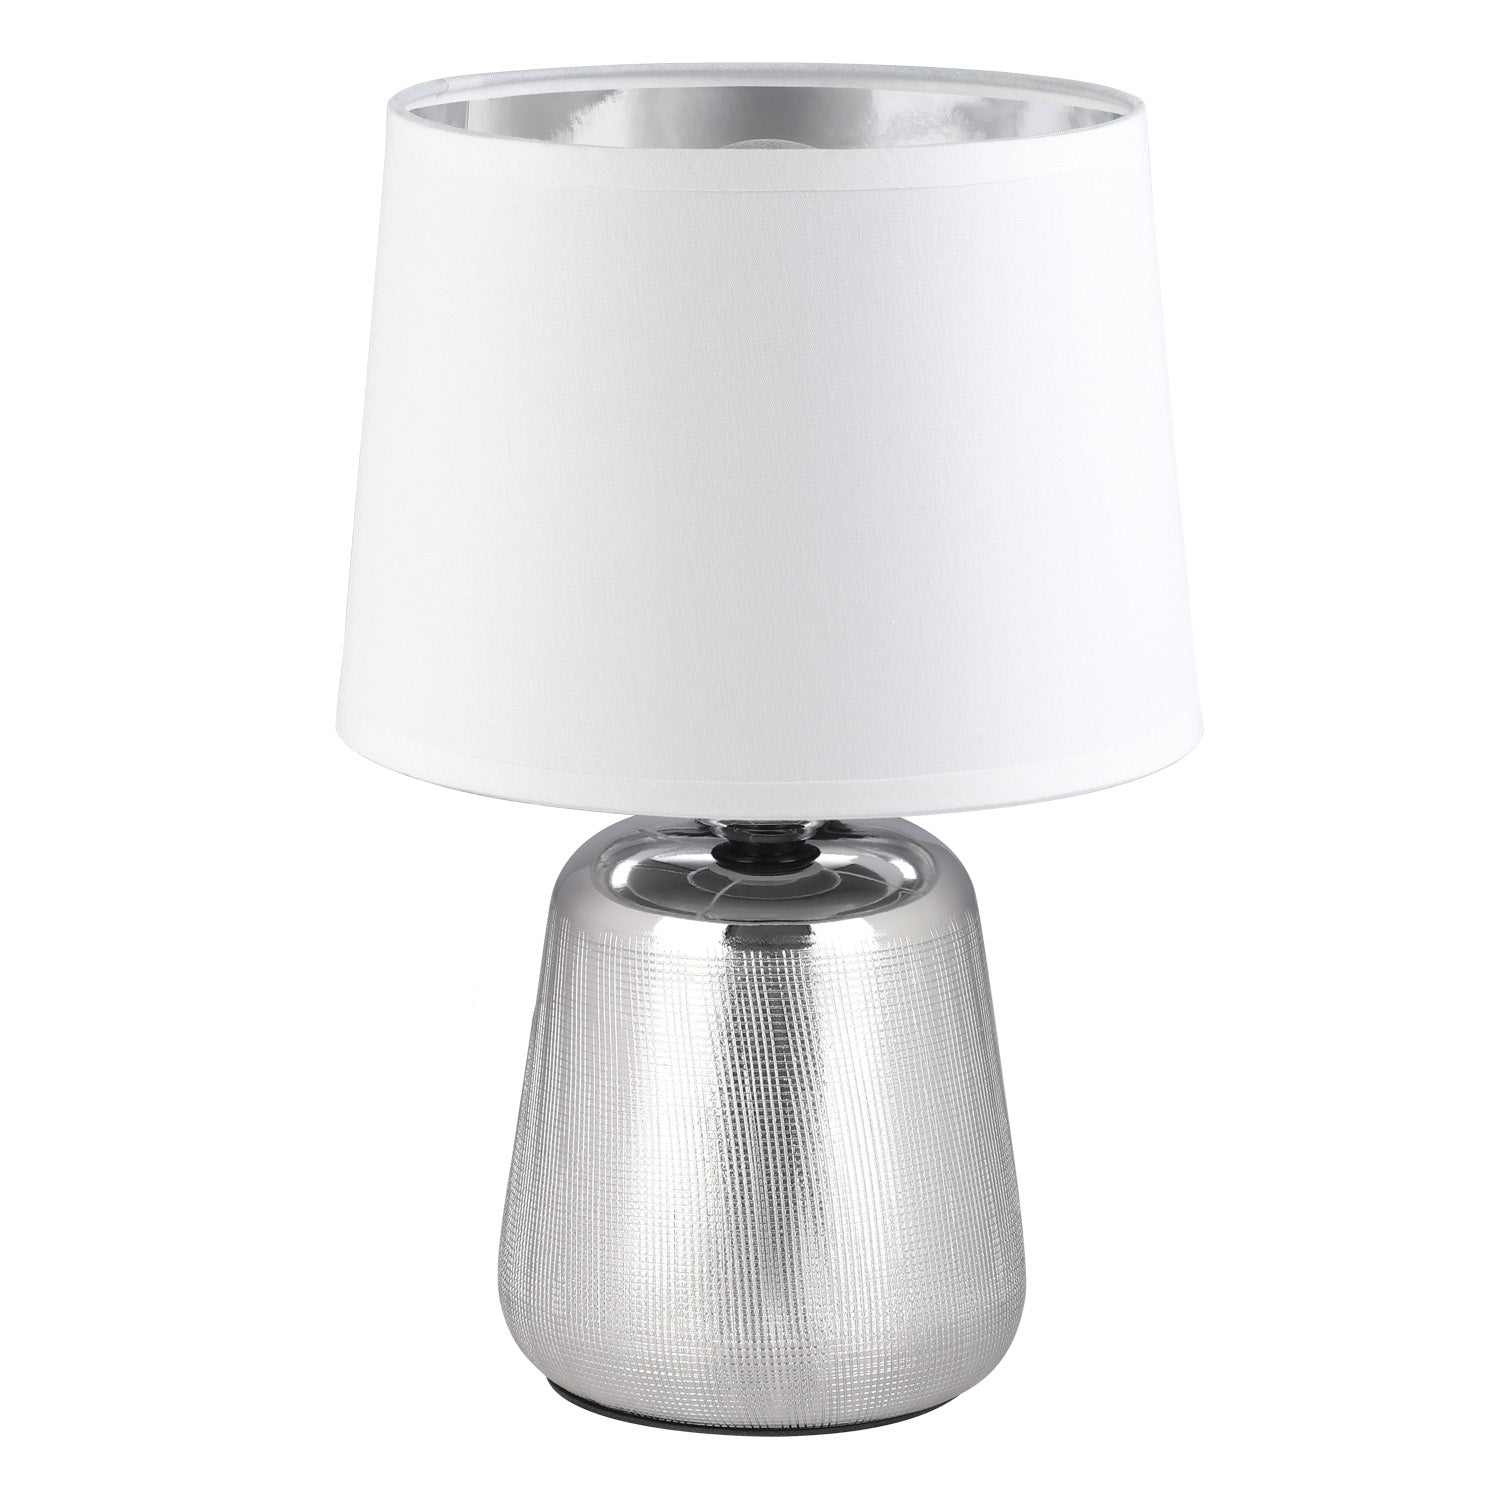 Manalba 1 1-Light Table Lamp